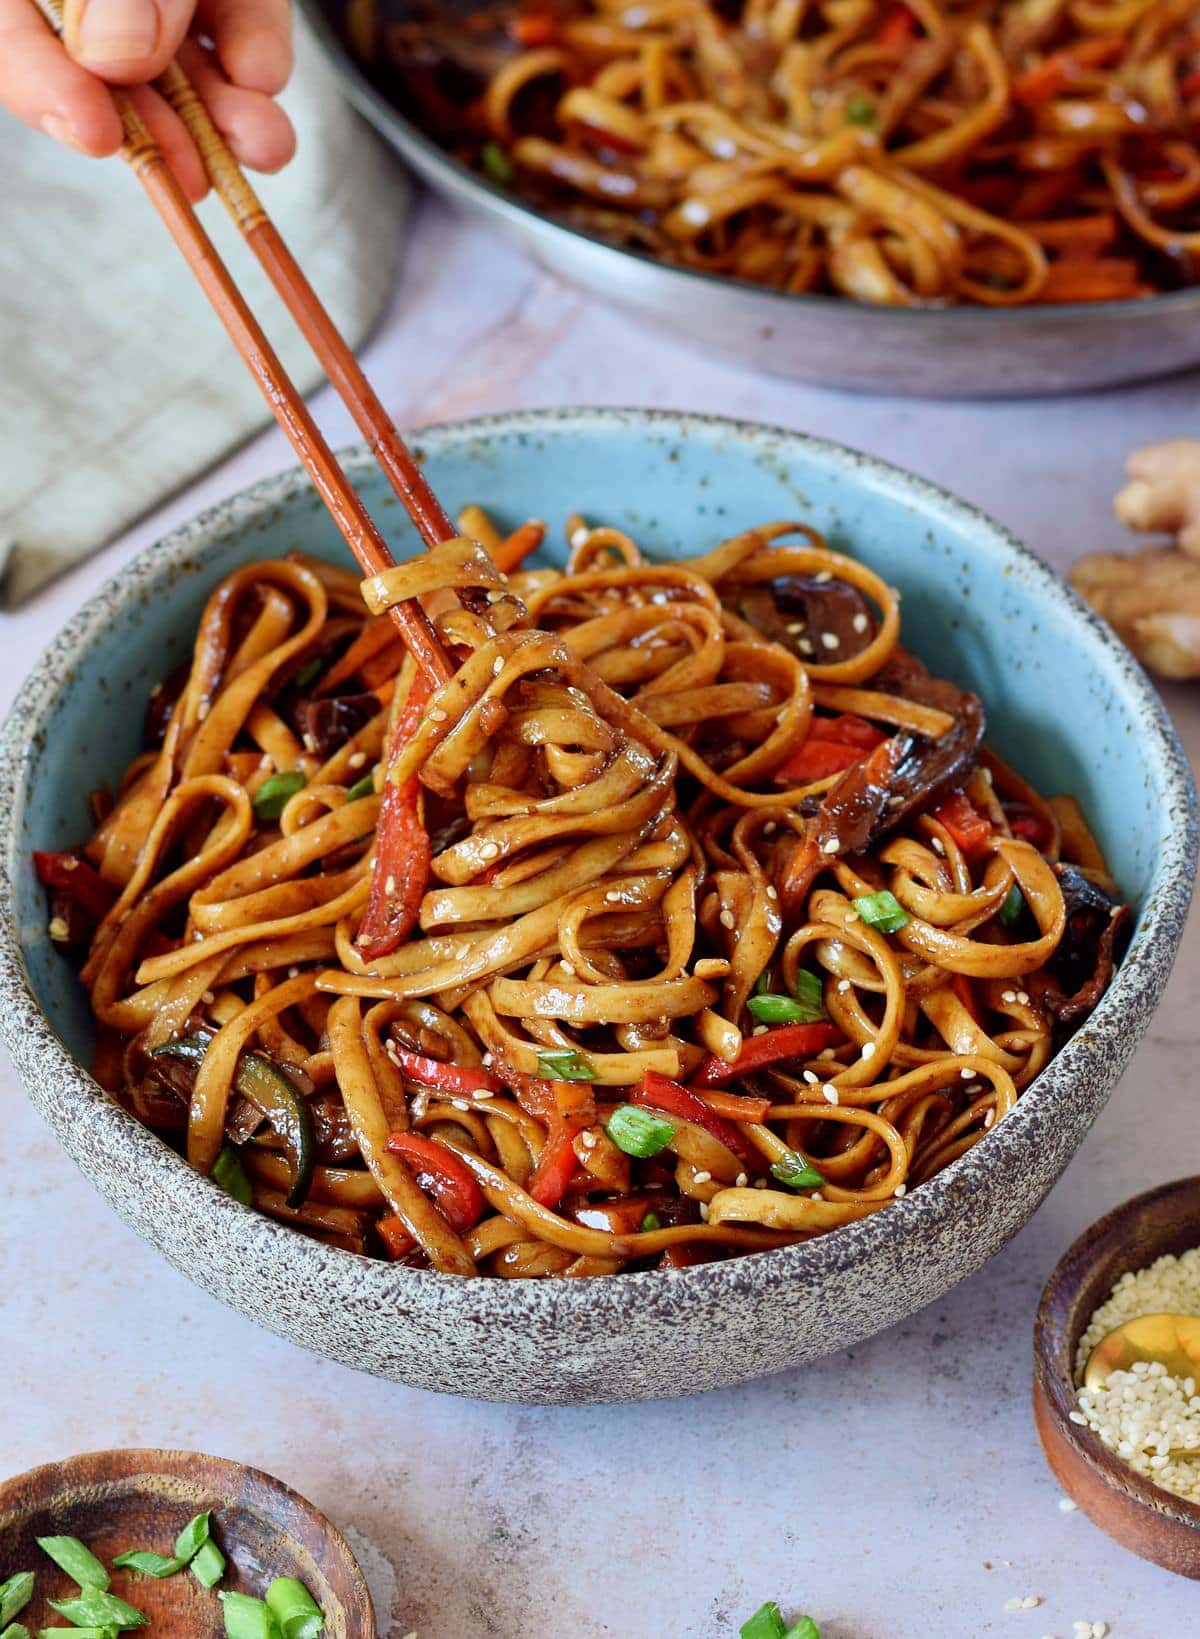 eating vegetable stir fry noodles with chopsticks Asian vegetarian noodle dish